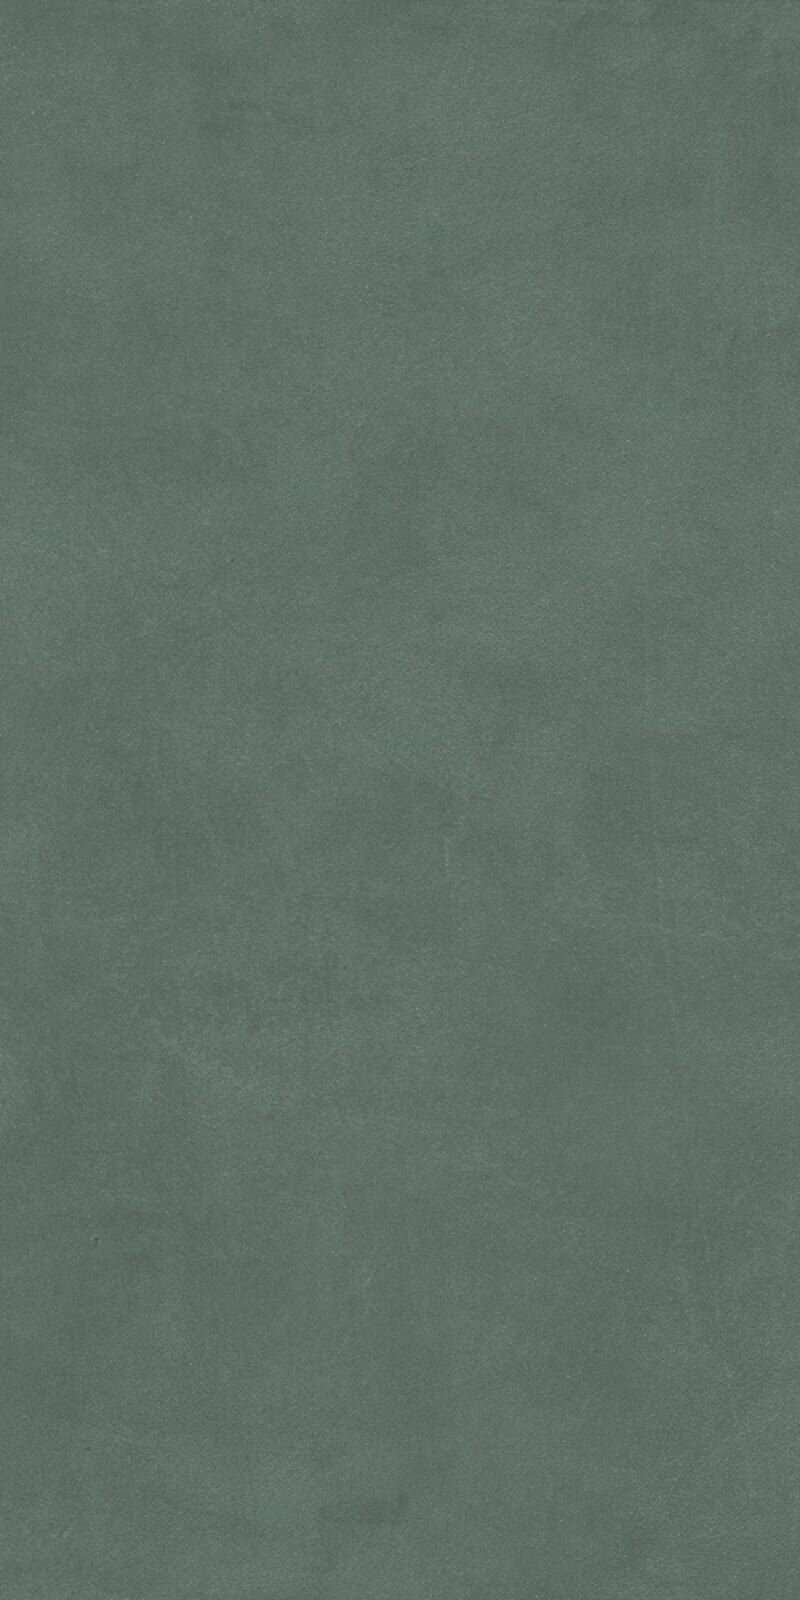 Керамическая плитка настенная Kerama marazzi Чементо Зеленый матовый обрезной 30x60 см, уп 1.26 м2, 7 плиток 30x60 см.